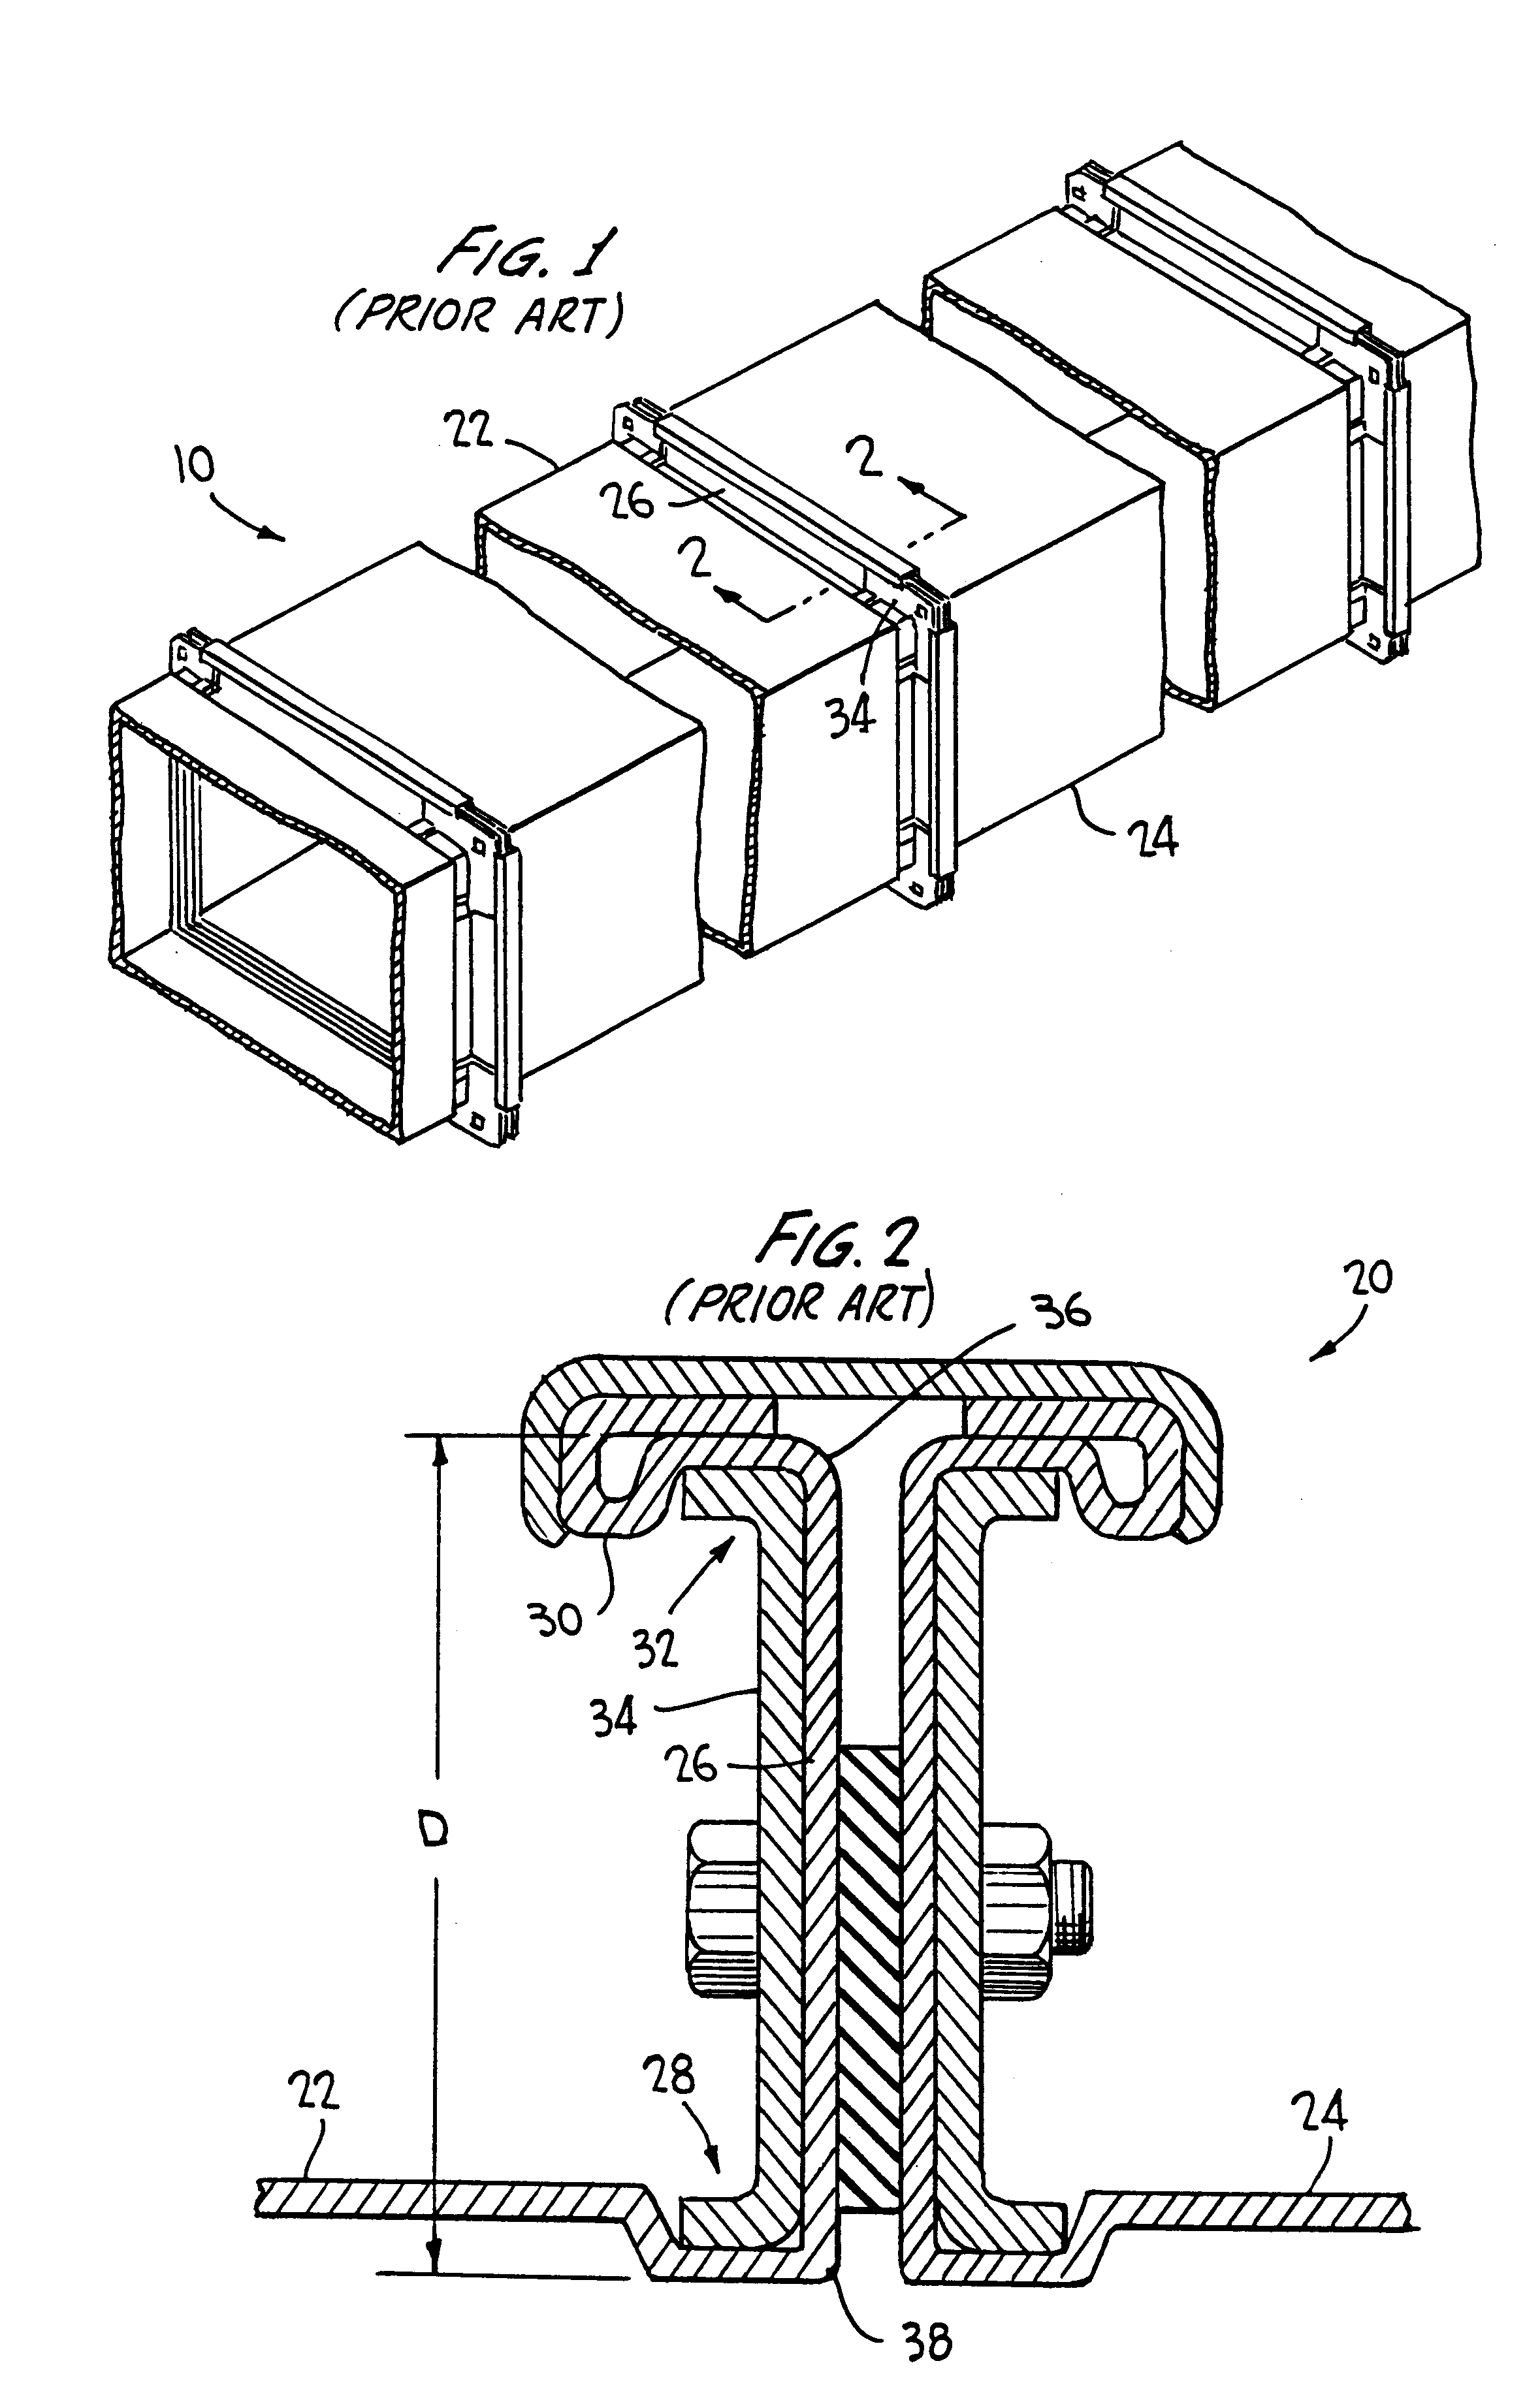 Sheet metal bending apparatus